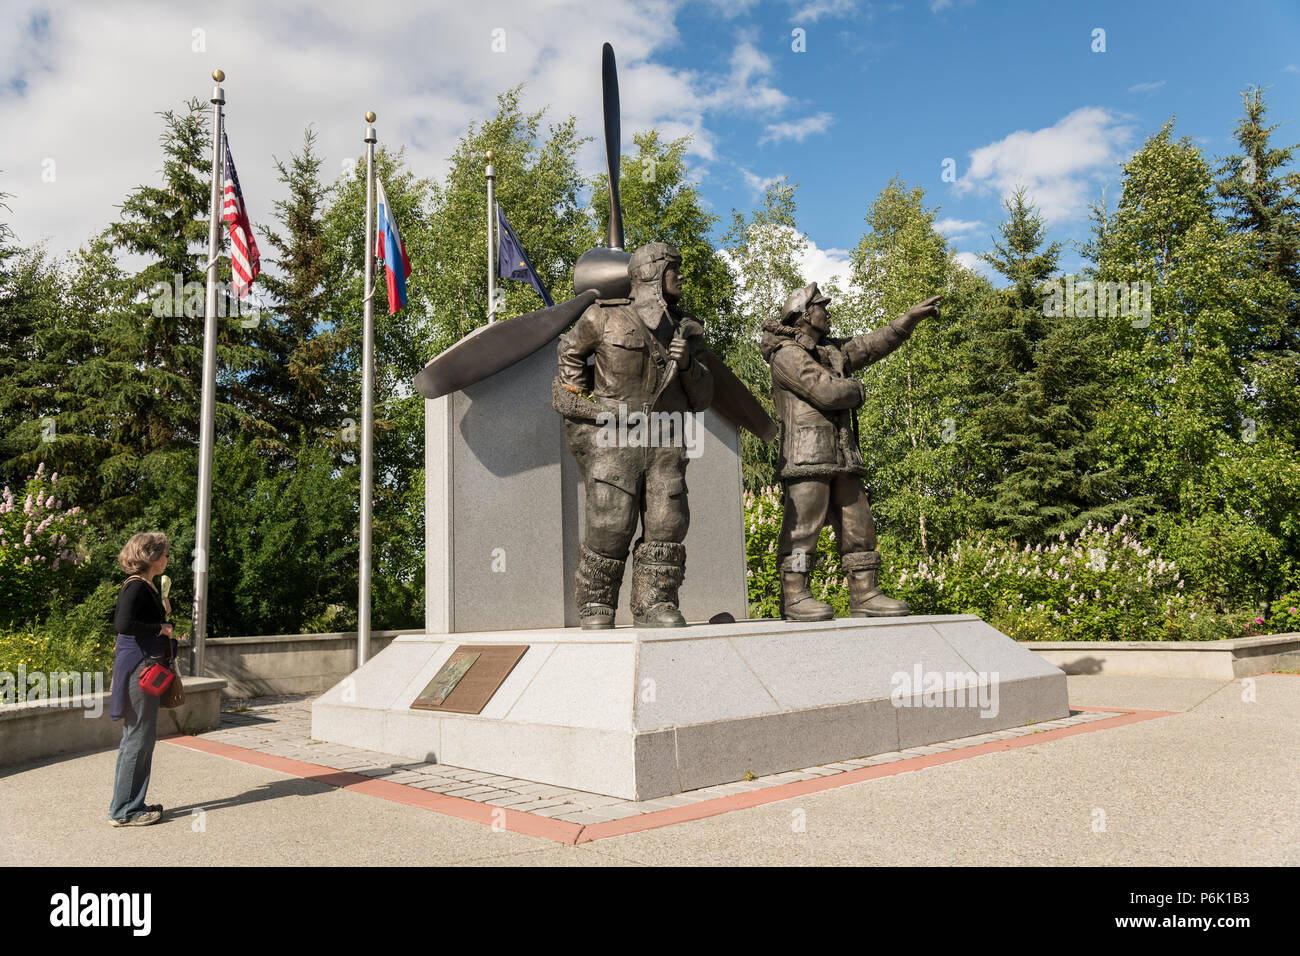 Una viste turistiche il Lend Lease monumento nel centro cittadino di Riverfront Park di Fairbanks Alaska. La statua raffigura russi e americani della seconda guerra mondiale piloti, commemorando l'Alaska come la messa in scena in terra il programma Lend-Lease che ha fornito quasi 8.000 aerei per il fronte orientale. Foto Stock